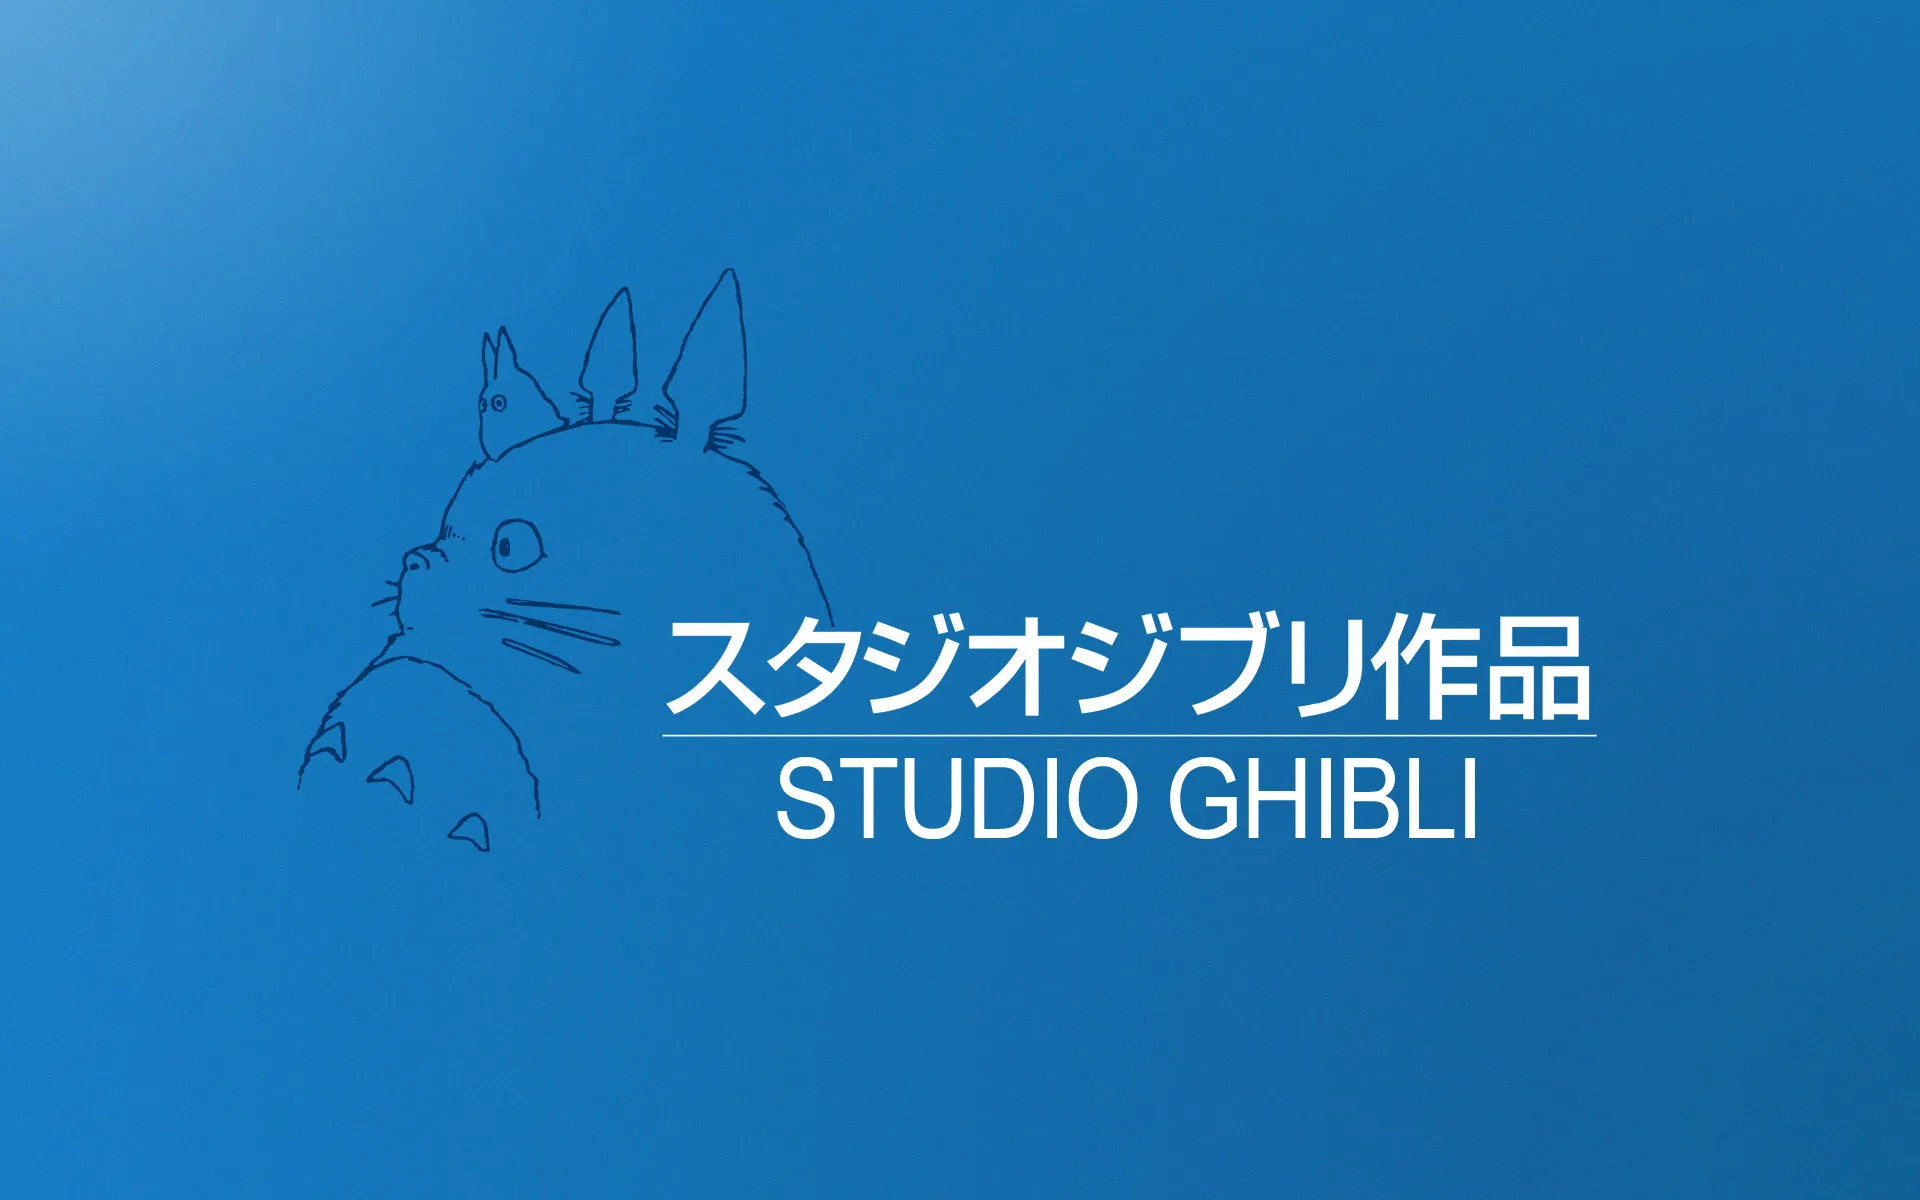 Studio Ghibli cierra sus puertas como estudio de animación